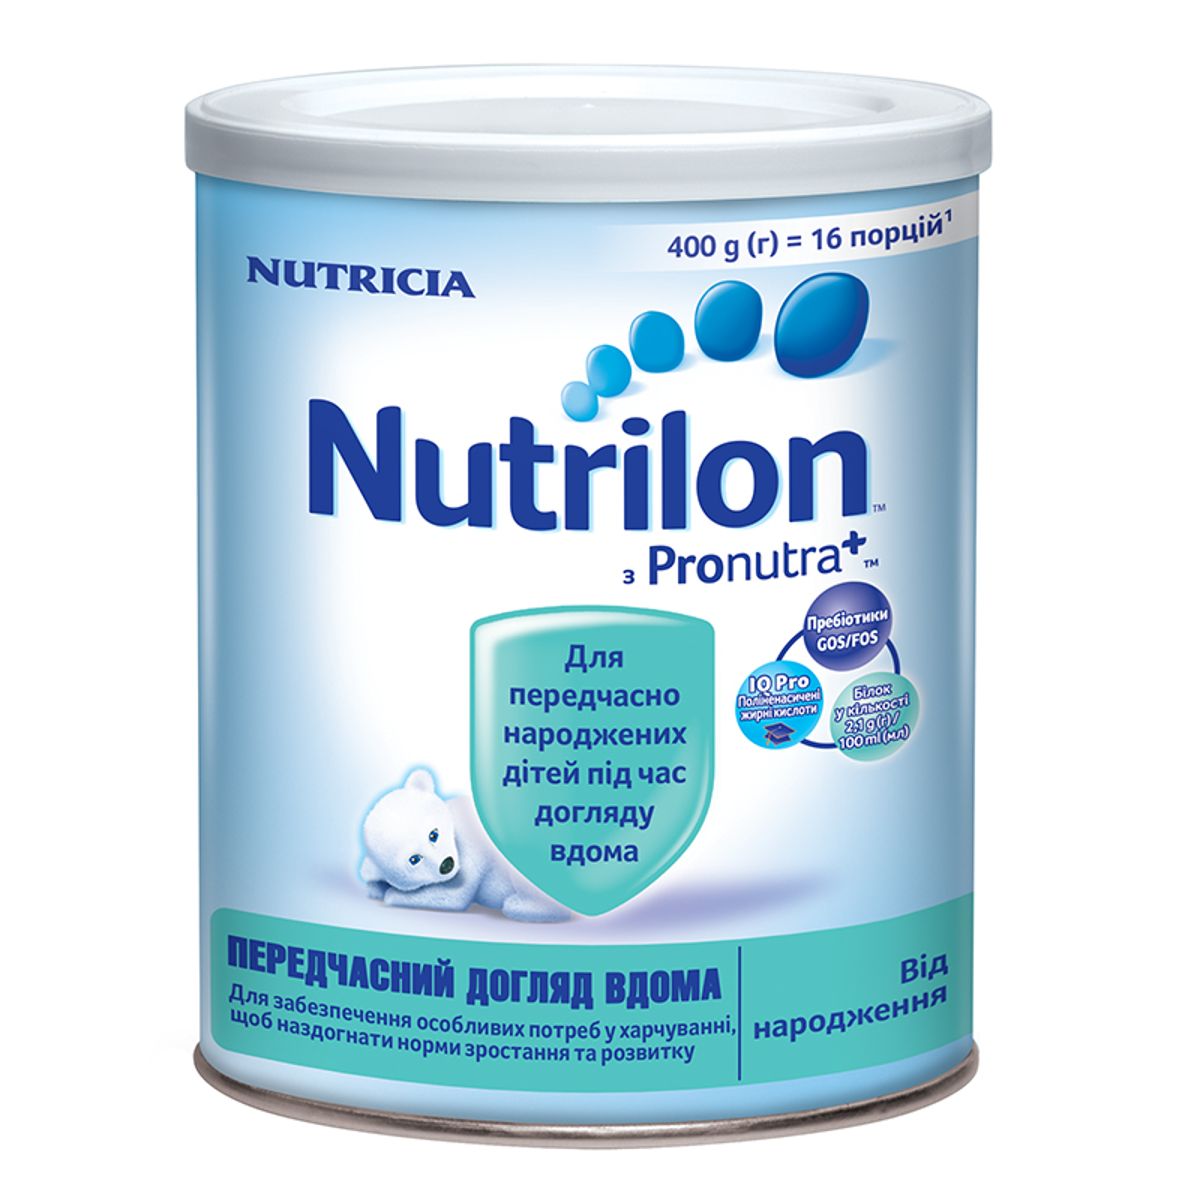 Сухая молочная смесь Nutrilon преждевременный уход дома для питания детей  от рождения 400 г - купить в Аптеке Низких Цен с доставкой по Украине,  цена, инструкция, аналоги, отзывы